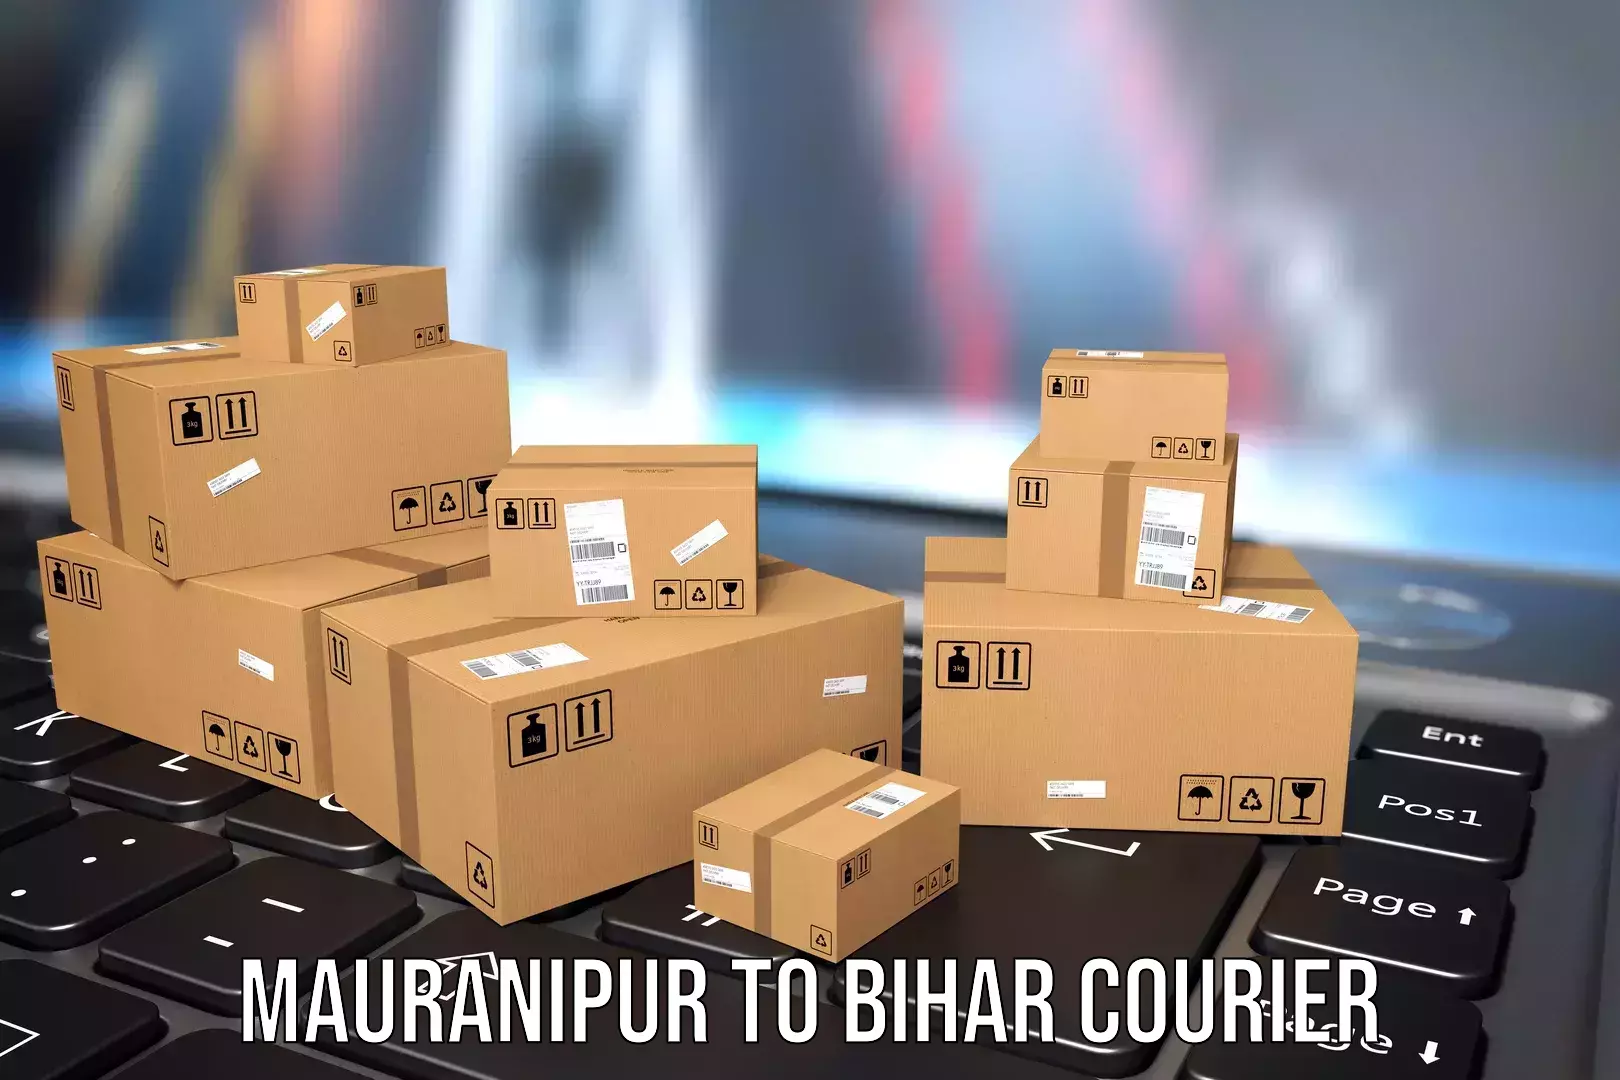 Baggage transport scheduler Mauranipur to Bihar